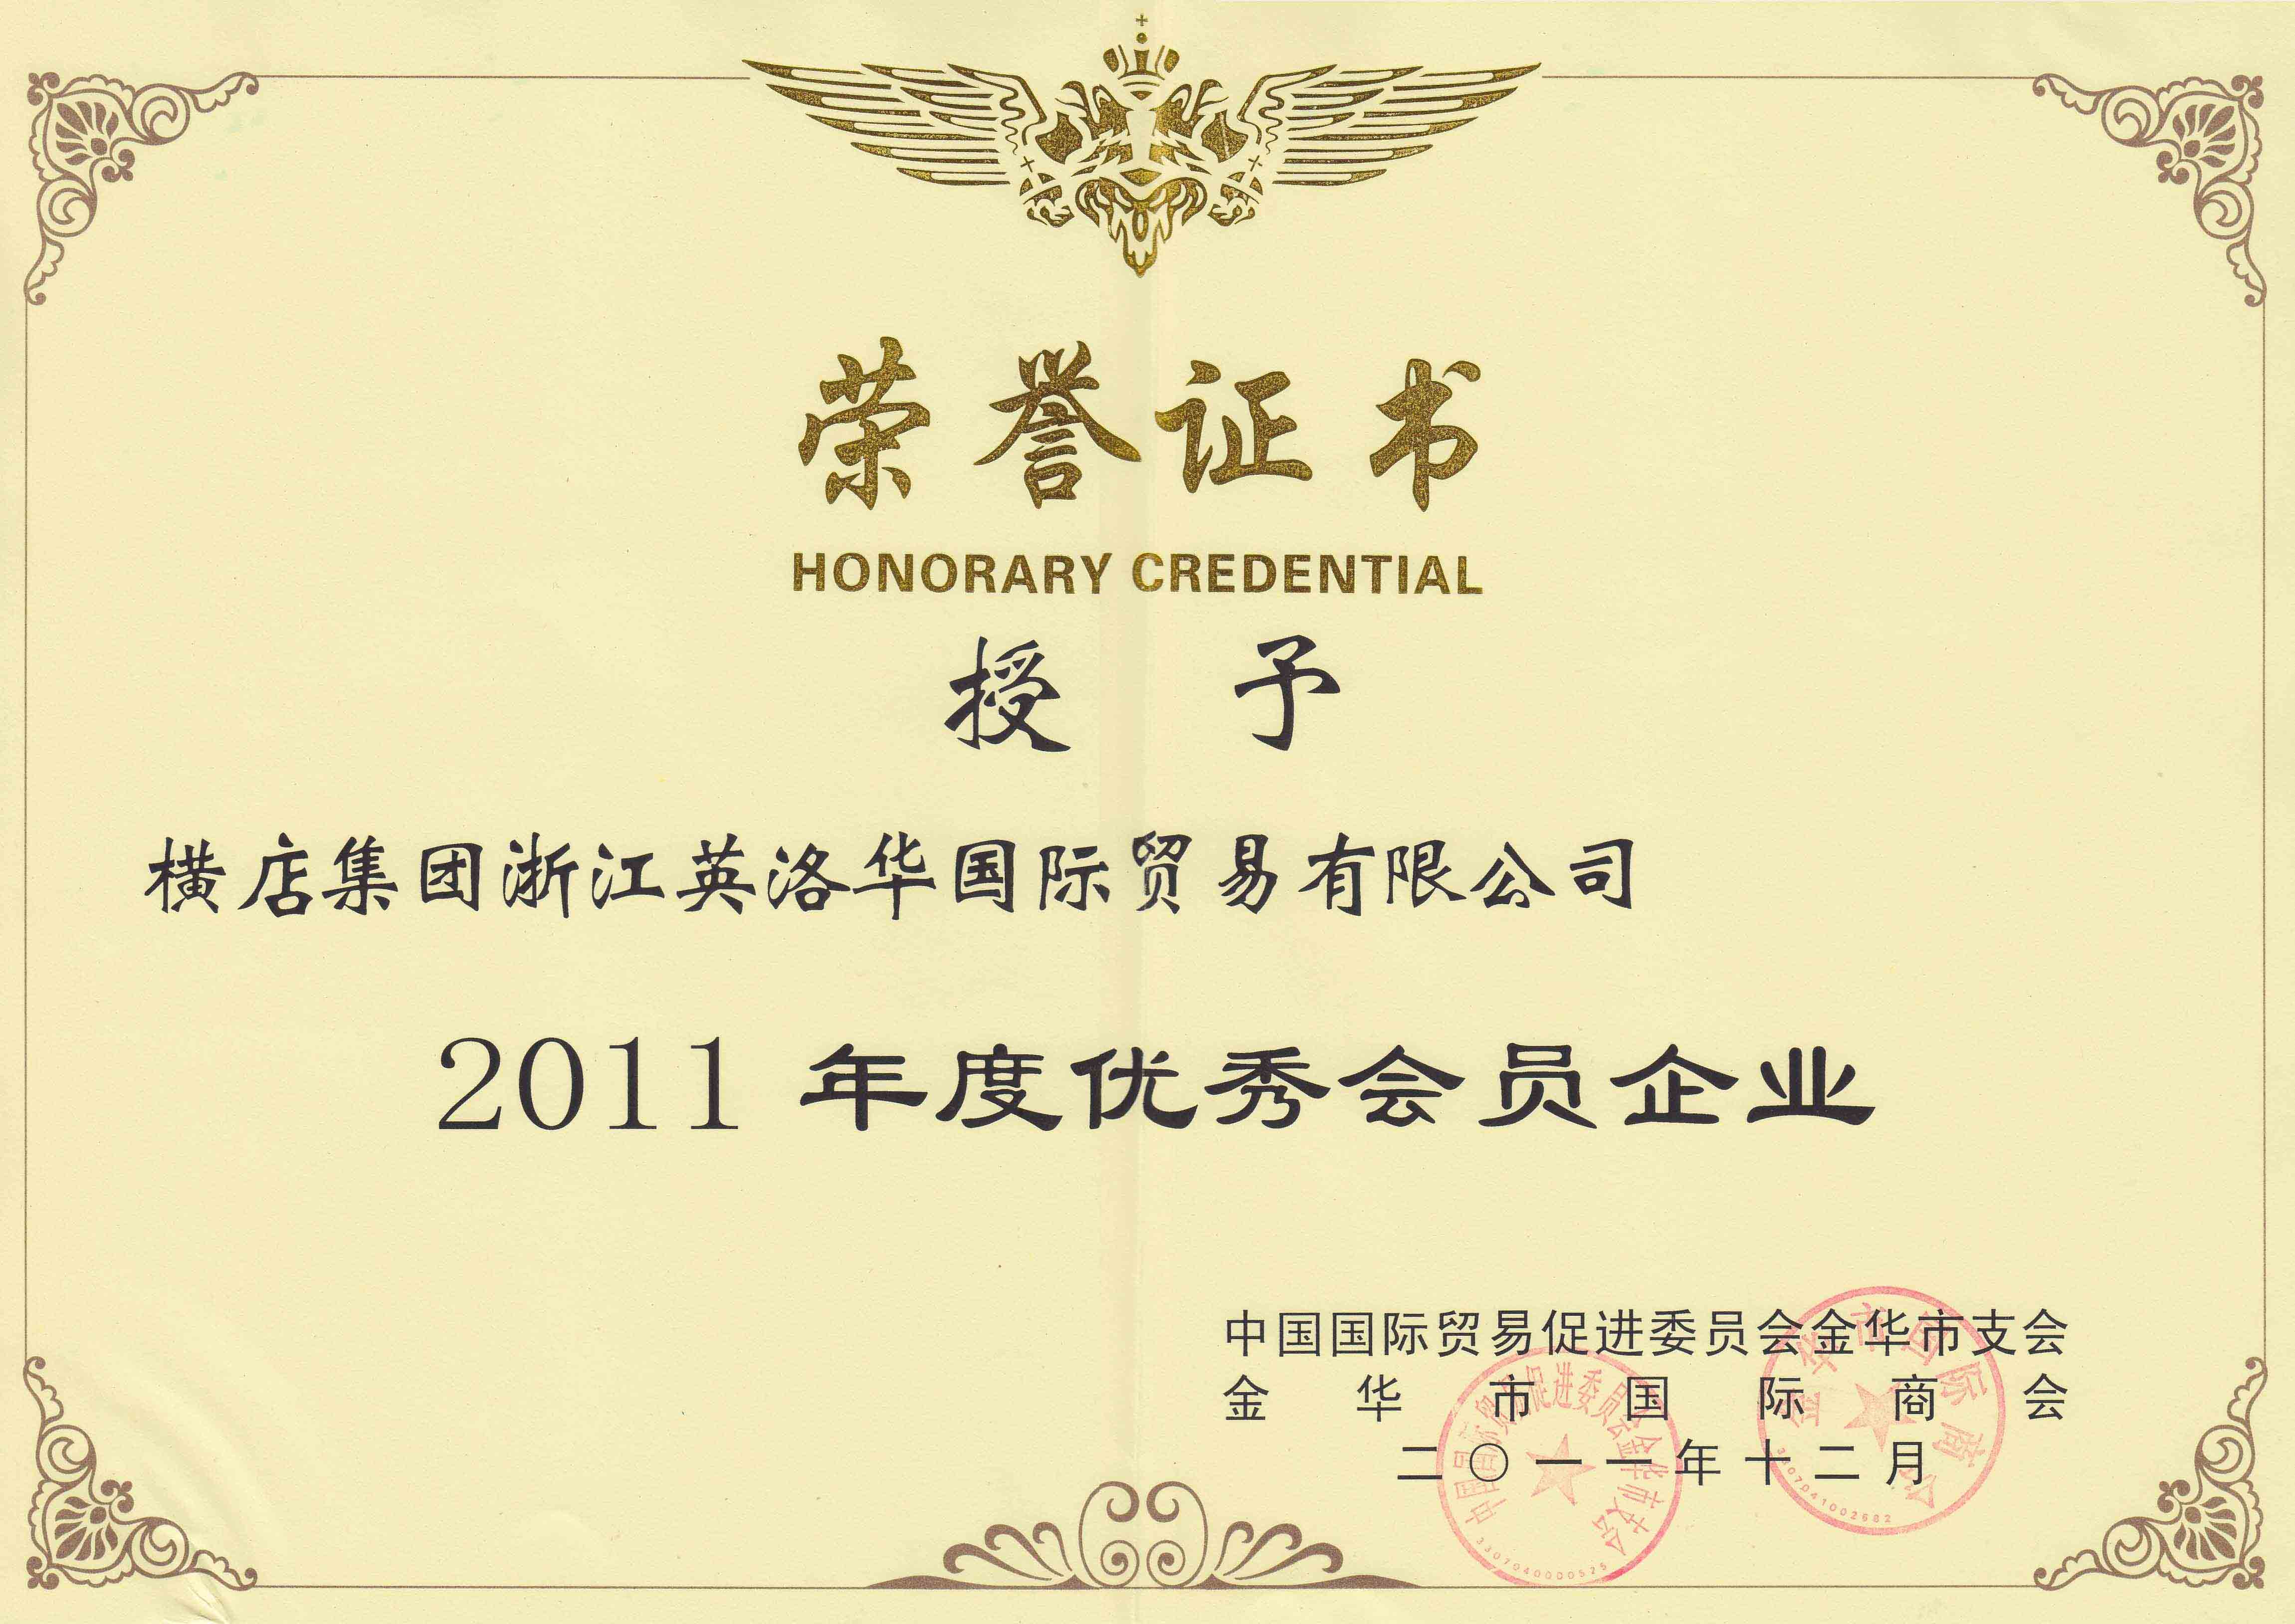 横店グループ浙江英洛華国際貿易有限公司に2011年度優秀な腰掛け企業を授与します。